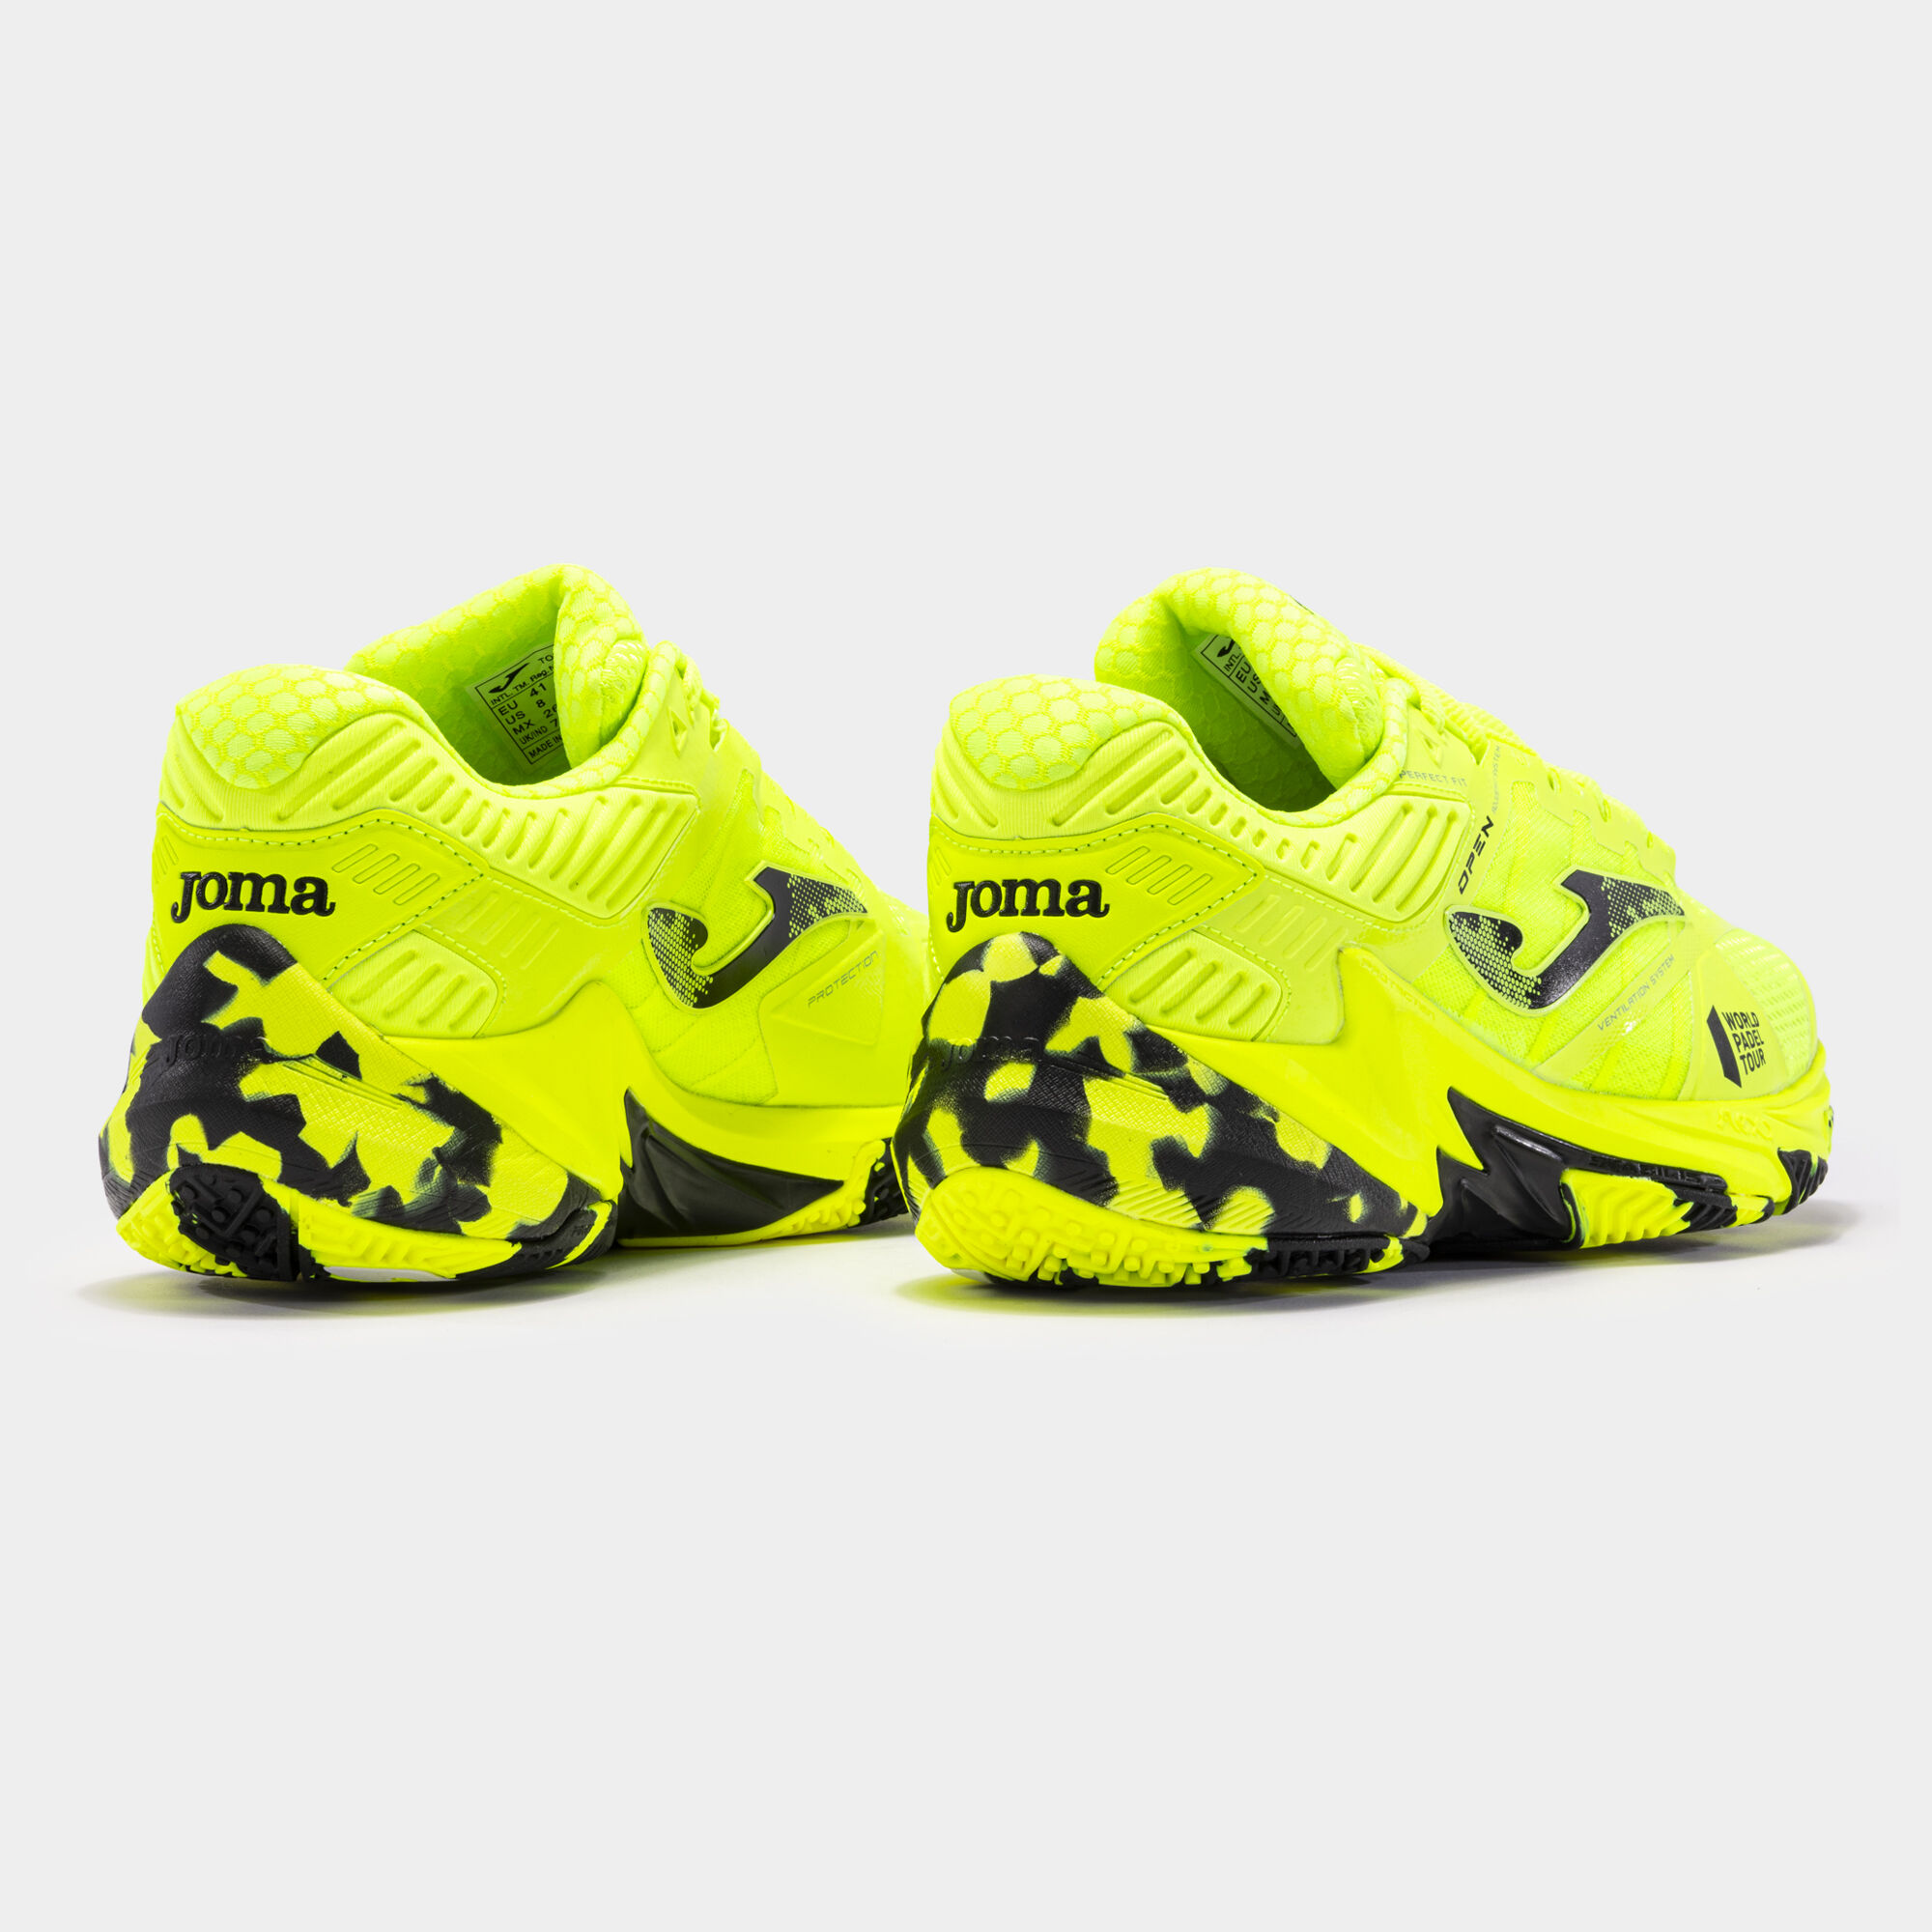 Joma Zapato Running Hombre R3000 Amarillo Fluo, amarillo FLUO, 45